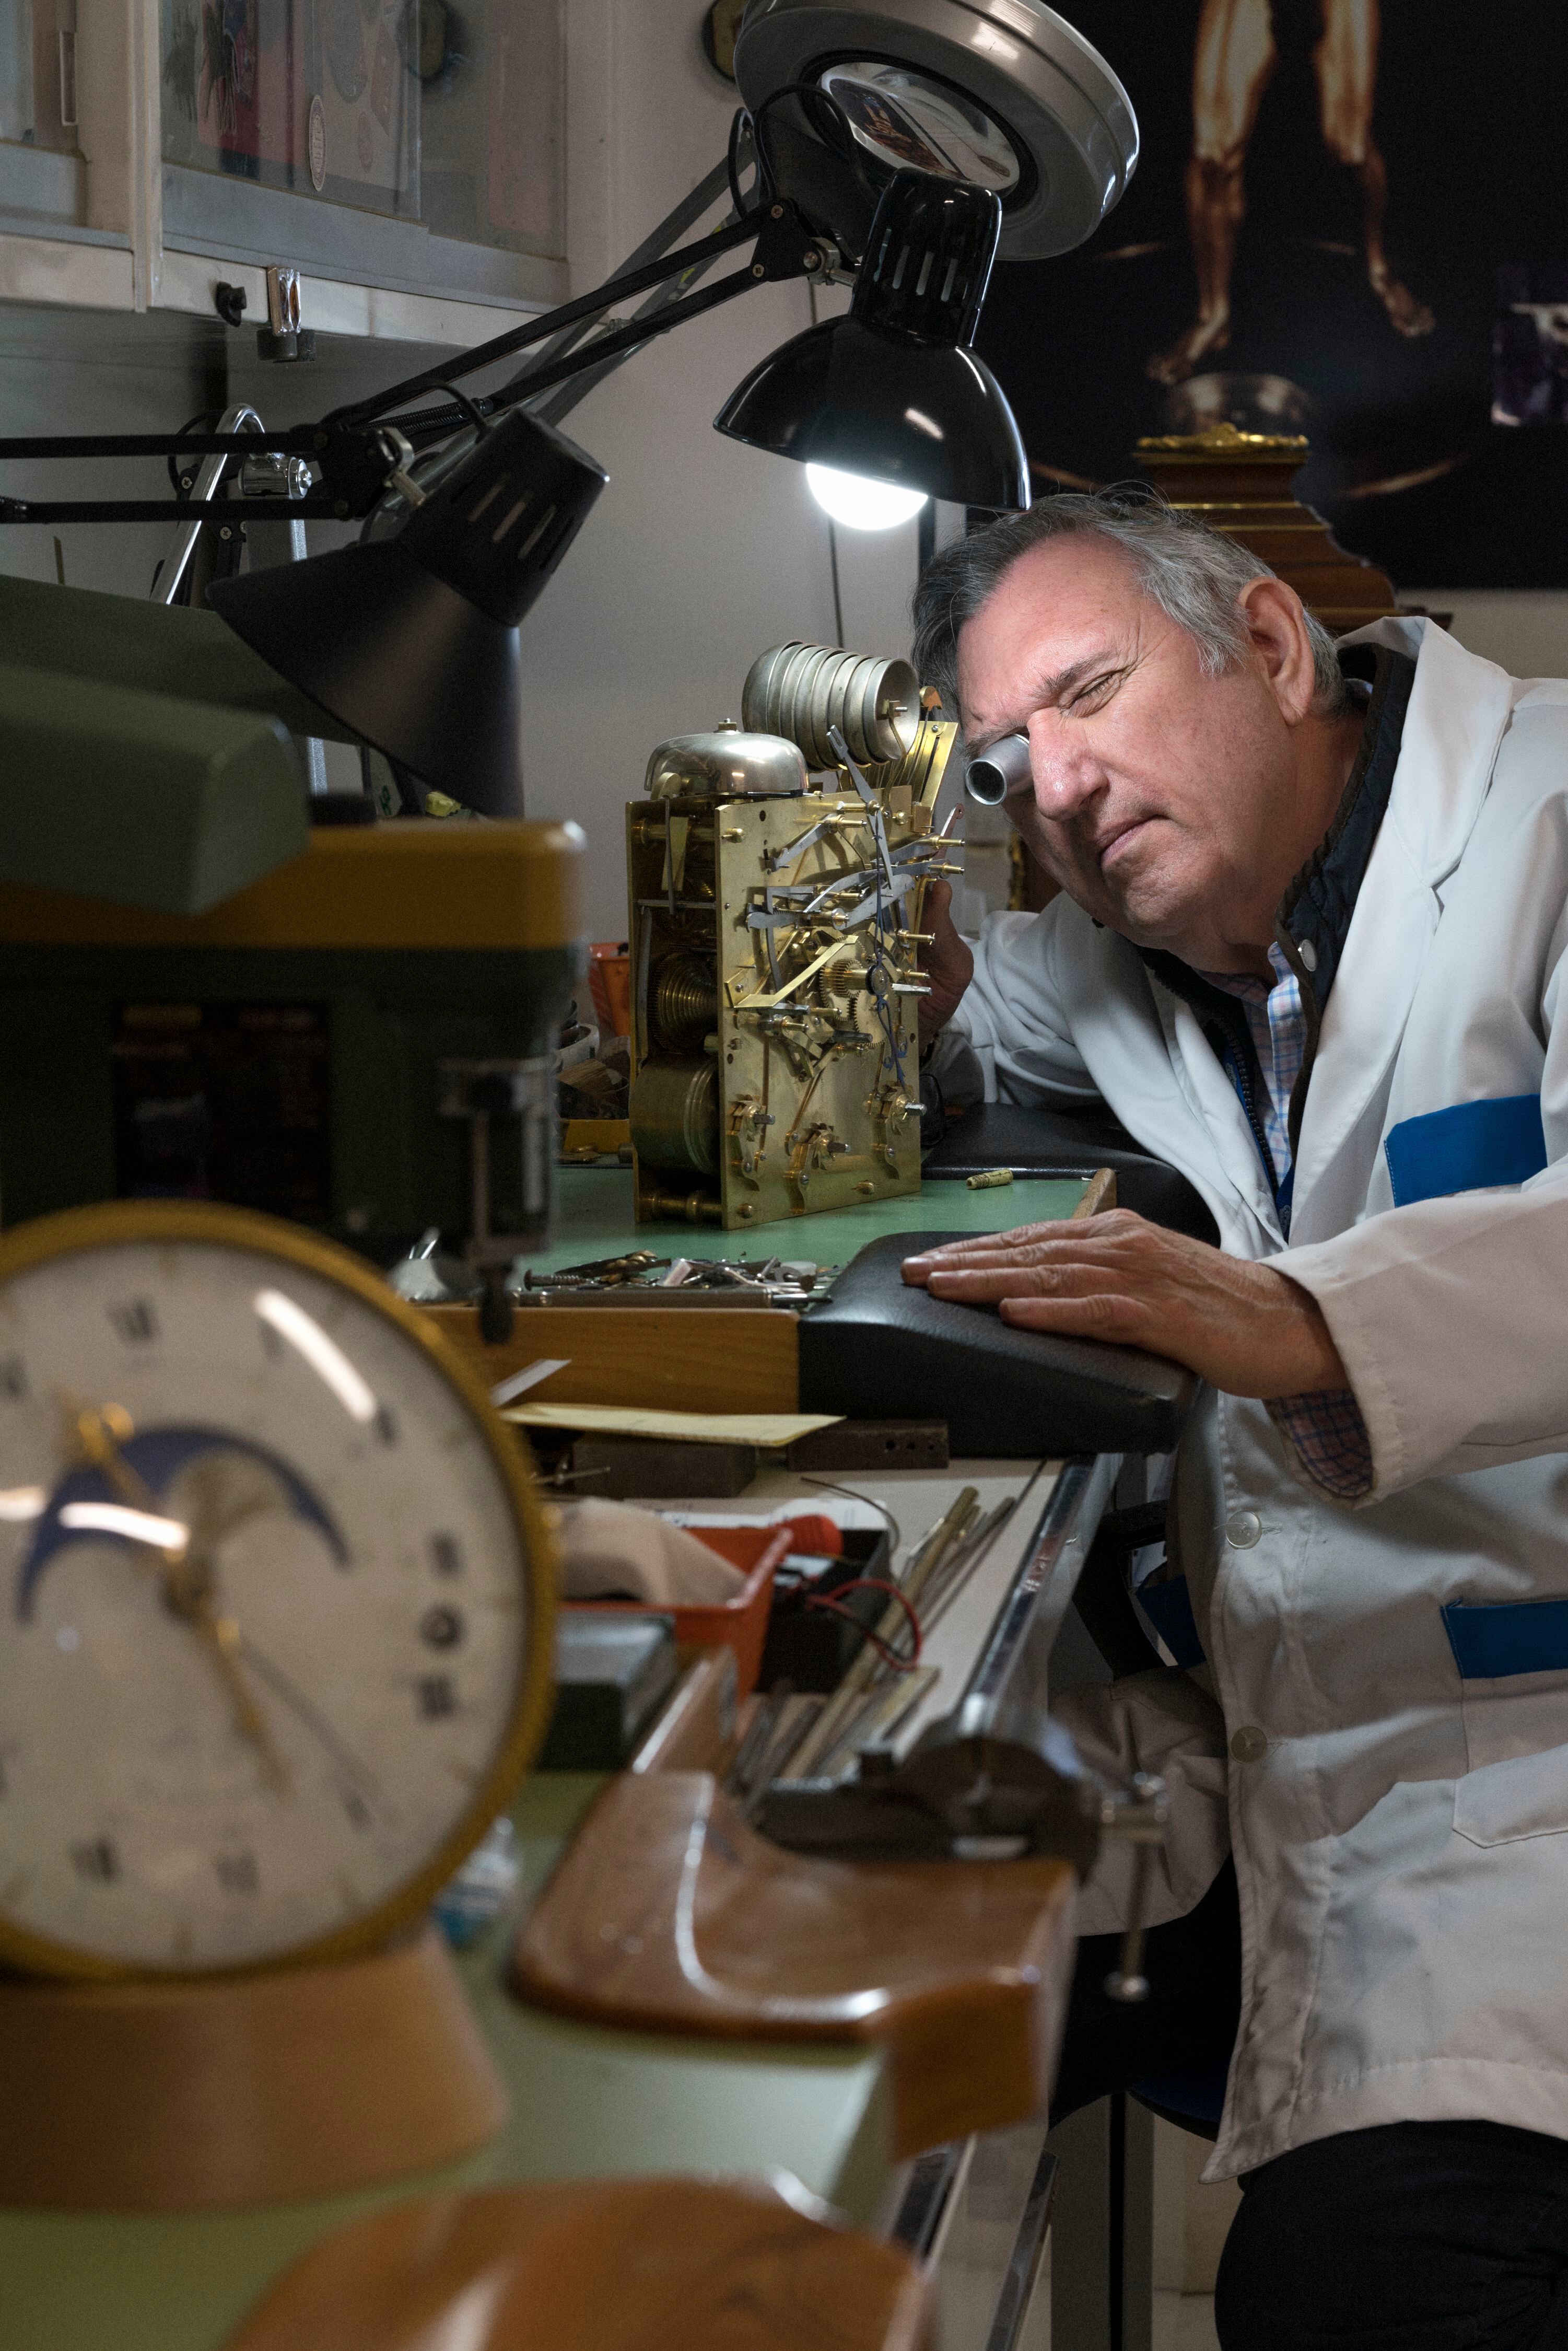 El encargado del taller de relojería, Manuel Santolaya, observa la maquinaria de un reloj 'bracket' inglés del siglo XVIII.